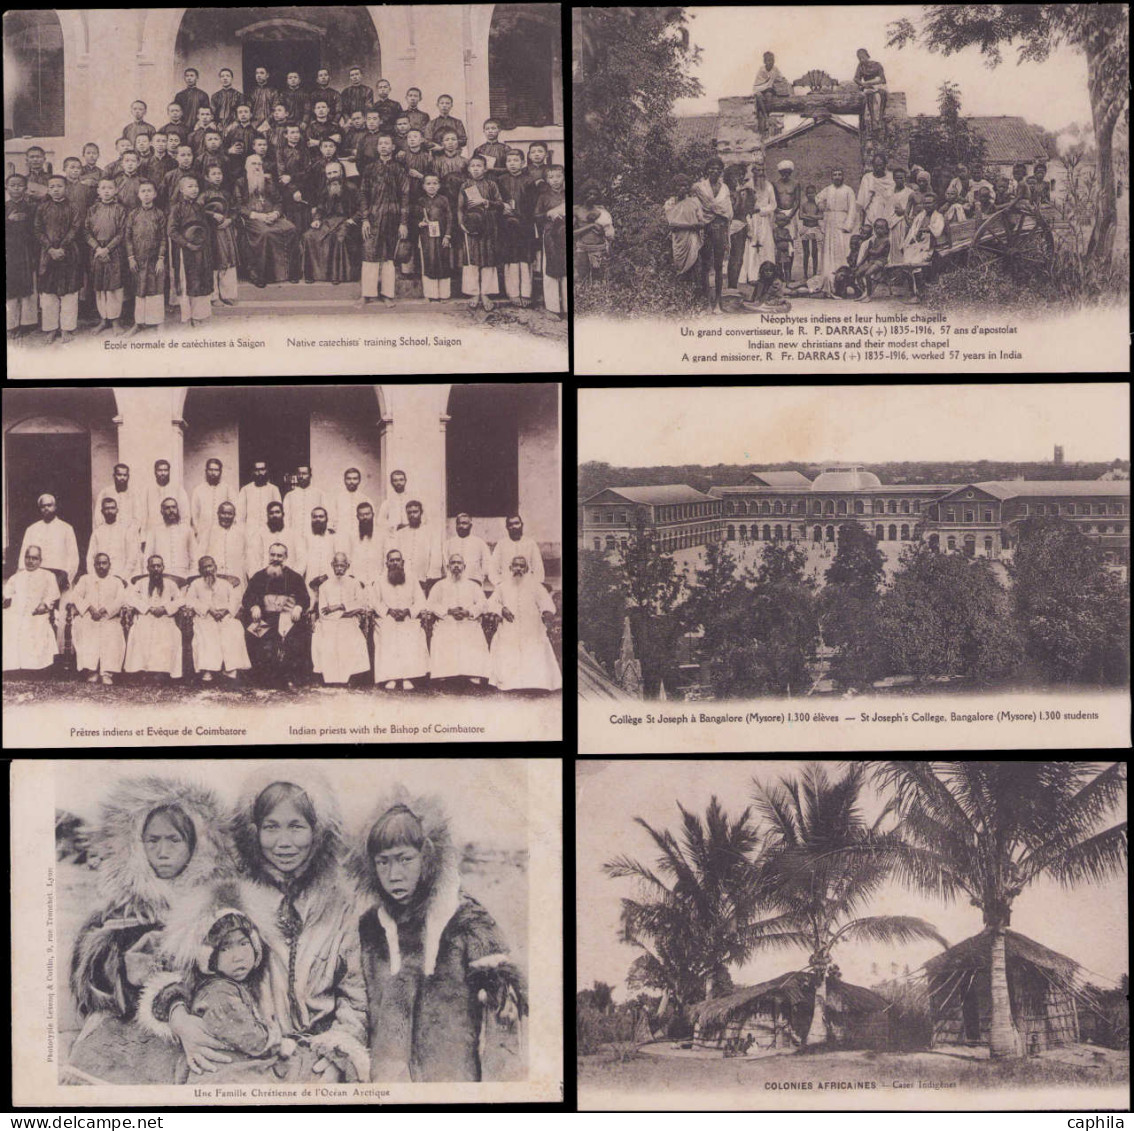 N COLONIES FRANCAISES - Lots & Collections - Ensemble de plus de 110 cartes postales, majorité Asie